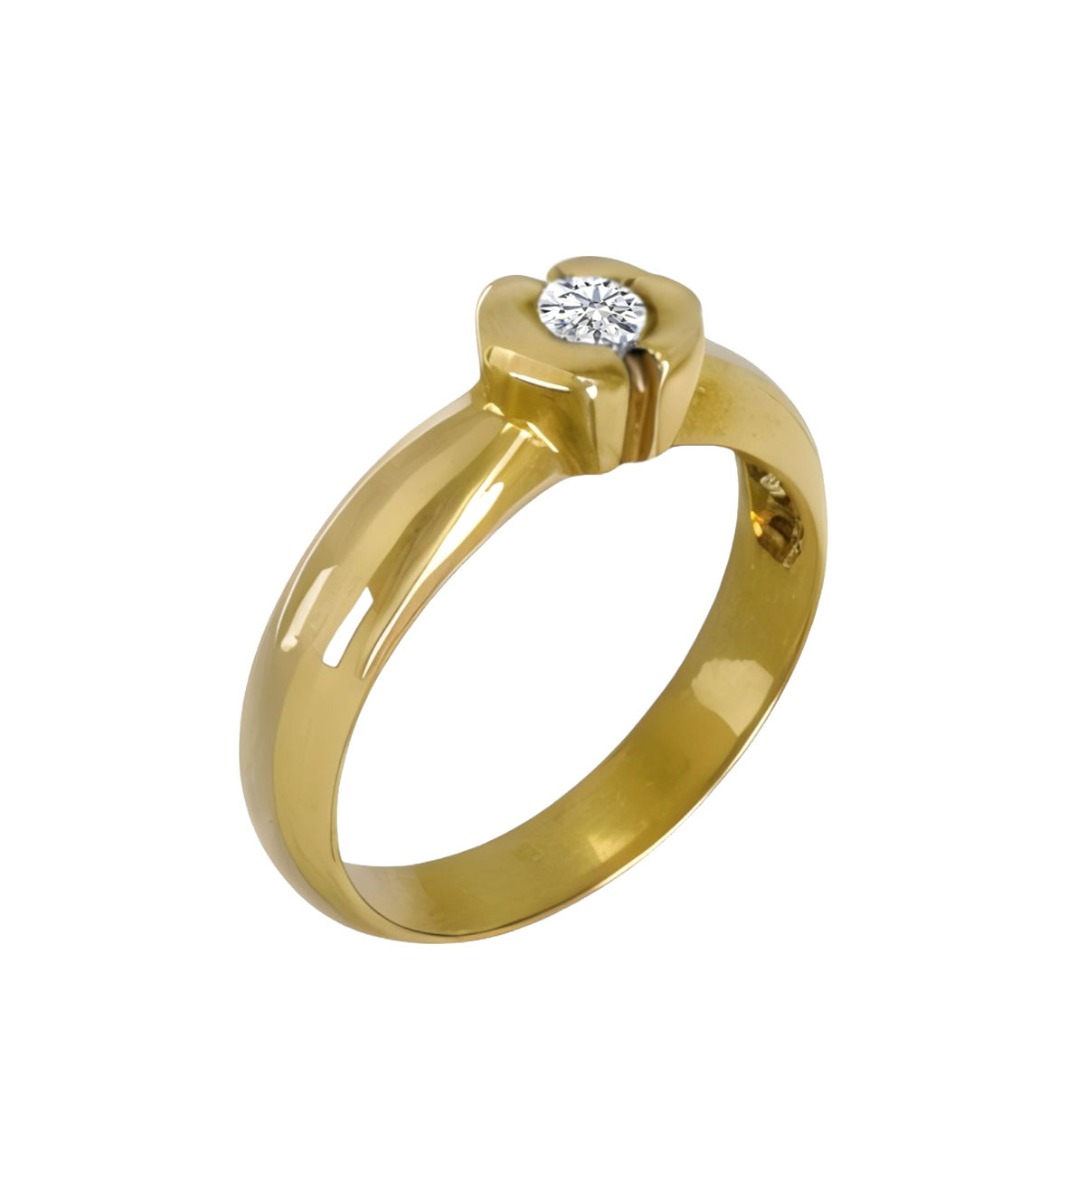 anillo de compromiso oro amarillo 18 ktes con diamante de 0,25 ct. fotografia oblicua